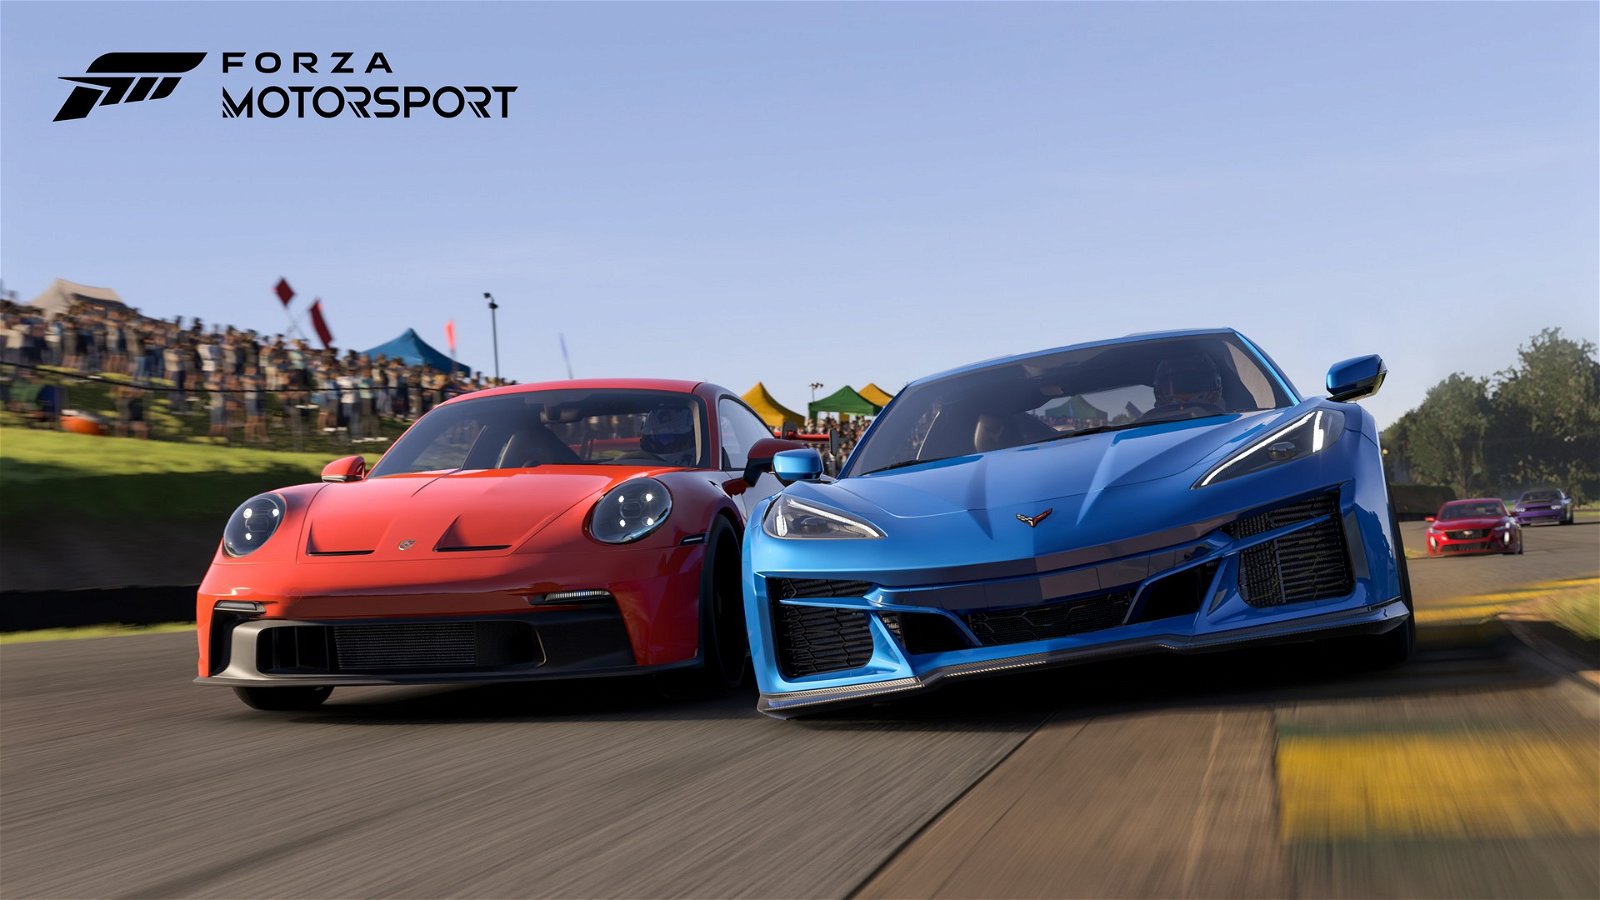 Immagine di Gran Turismo 7 batte Forza Motorsport, l'analisi di Digital Foundry